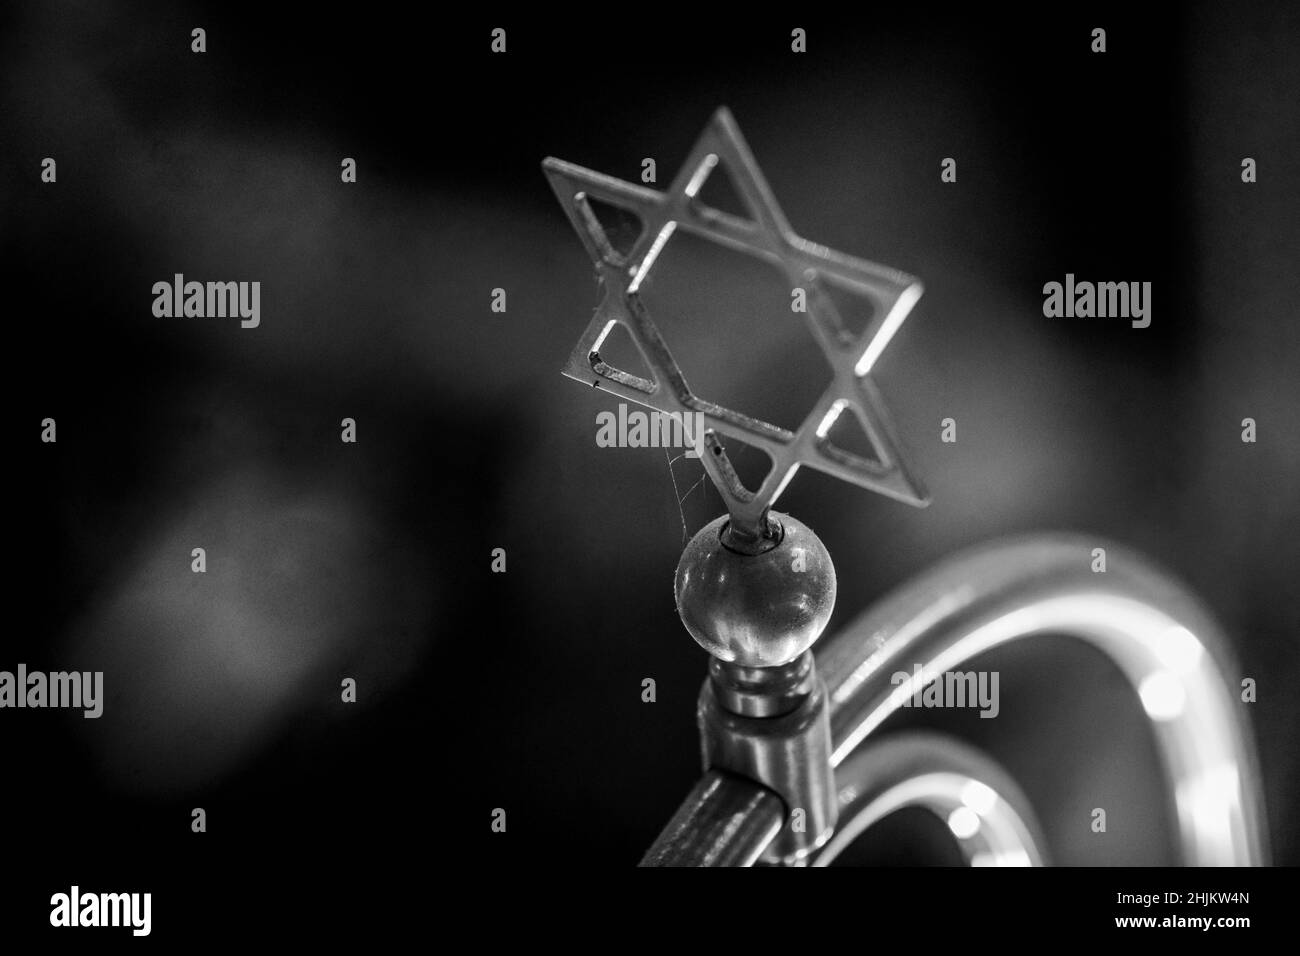 Profondità di campo poco profonda (fuoco selettivo) dettagli con una stella di metallo di decorazione David all'interno di una sinagoga. Foto Stock